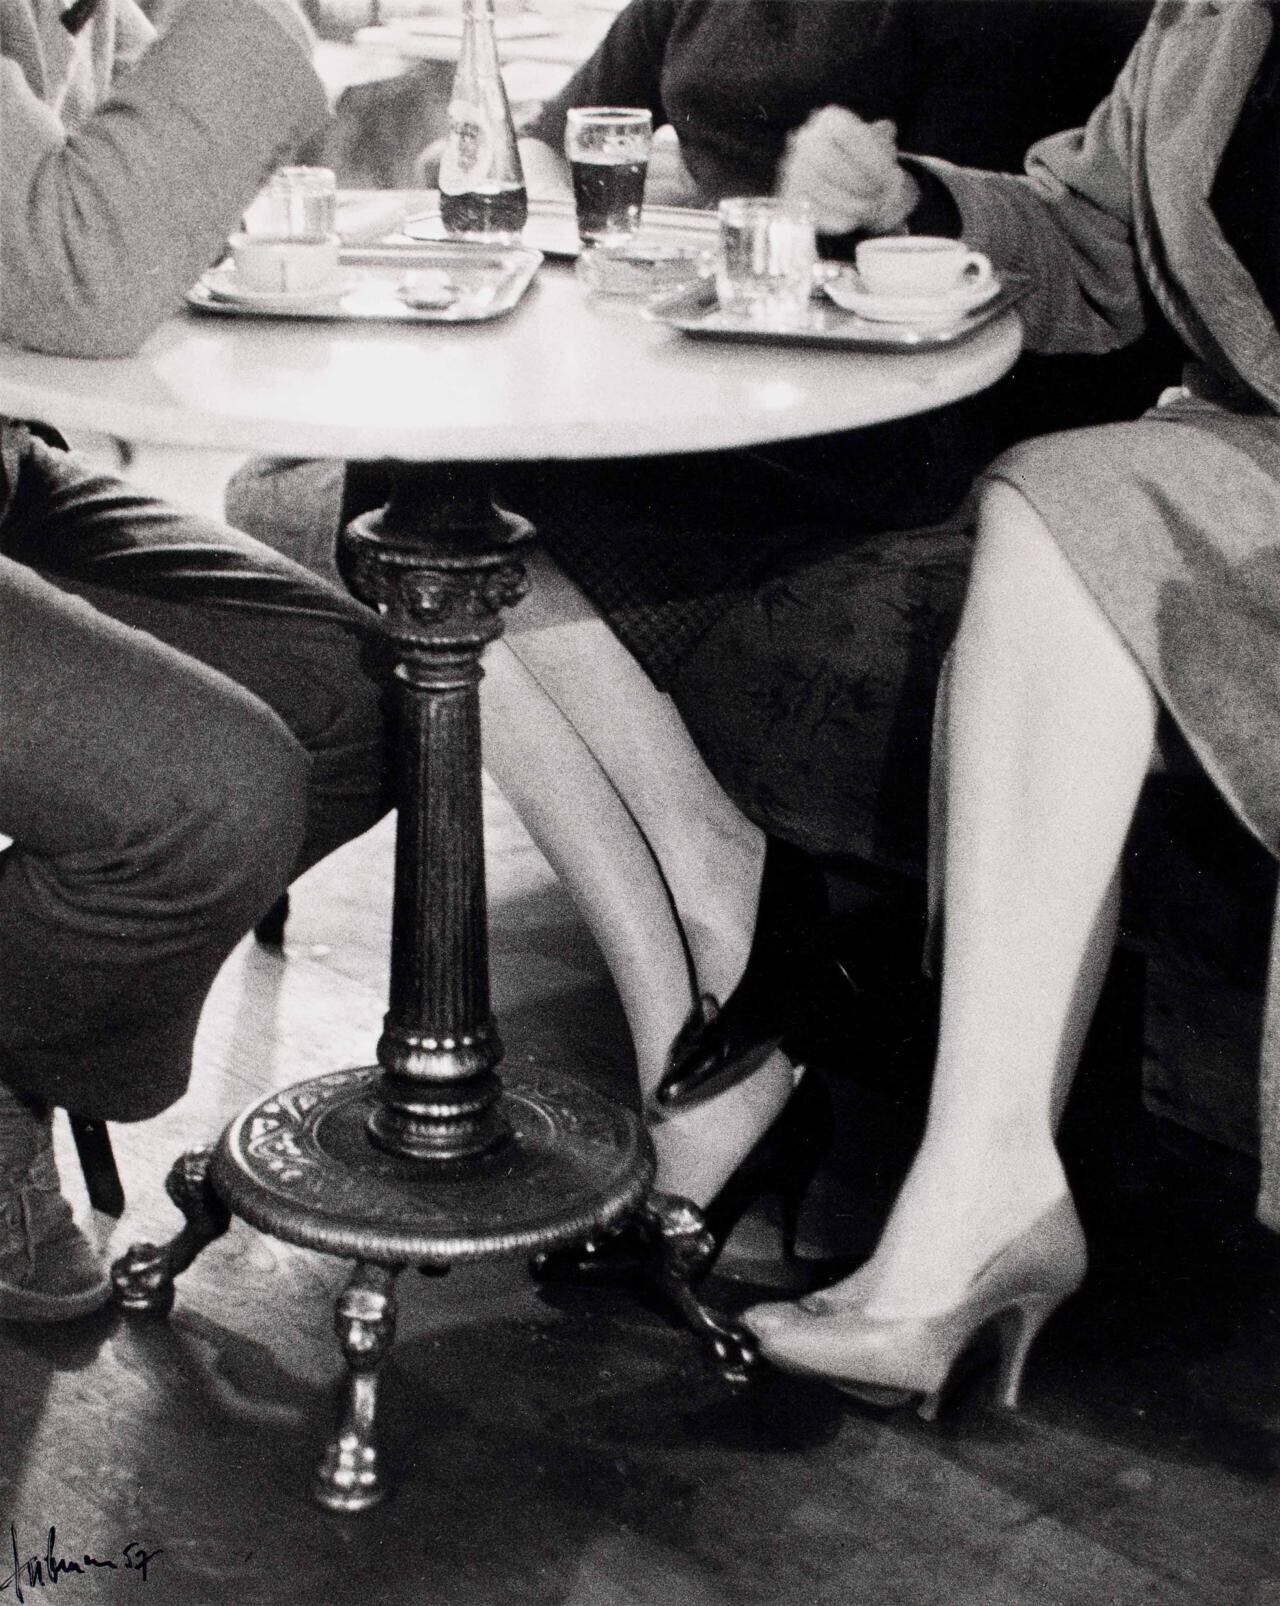 Кафе Гавелка, Вена, ок. 1956. Фотограф Франц Хубманн